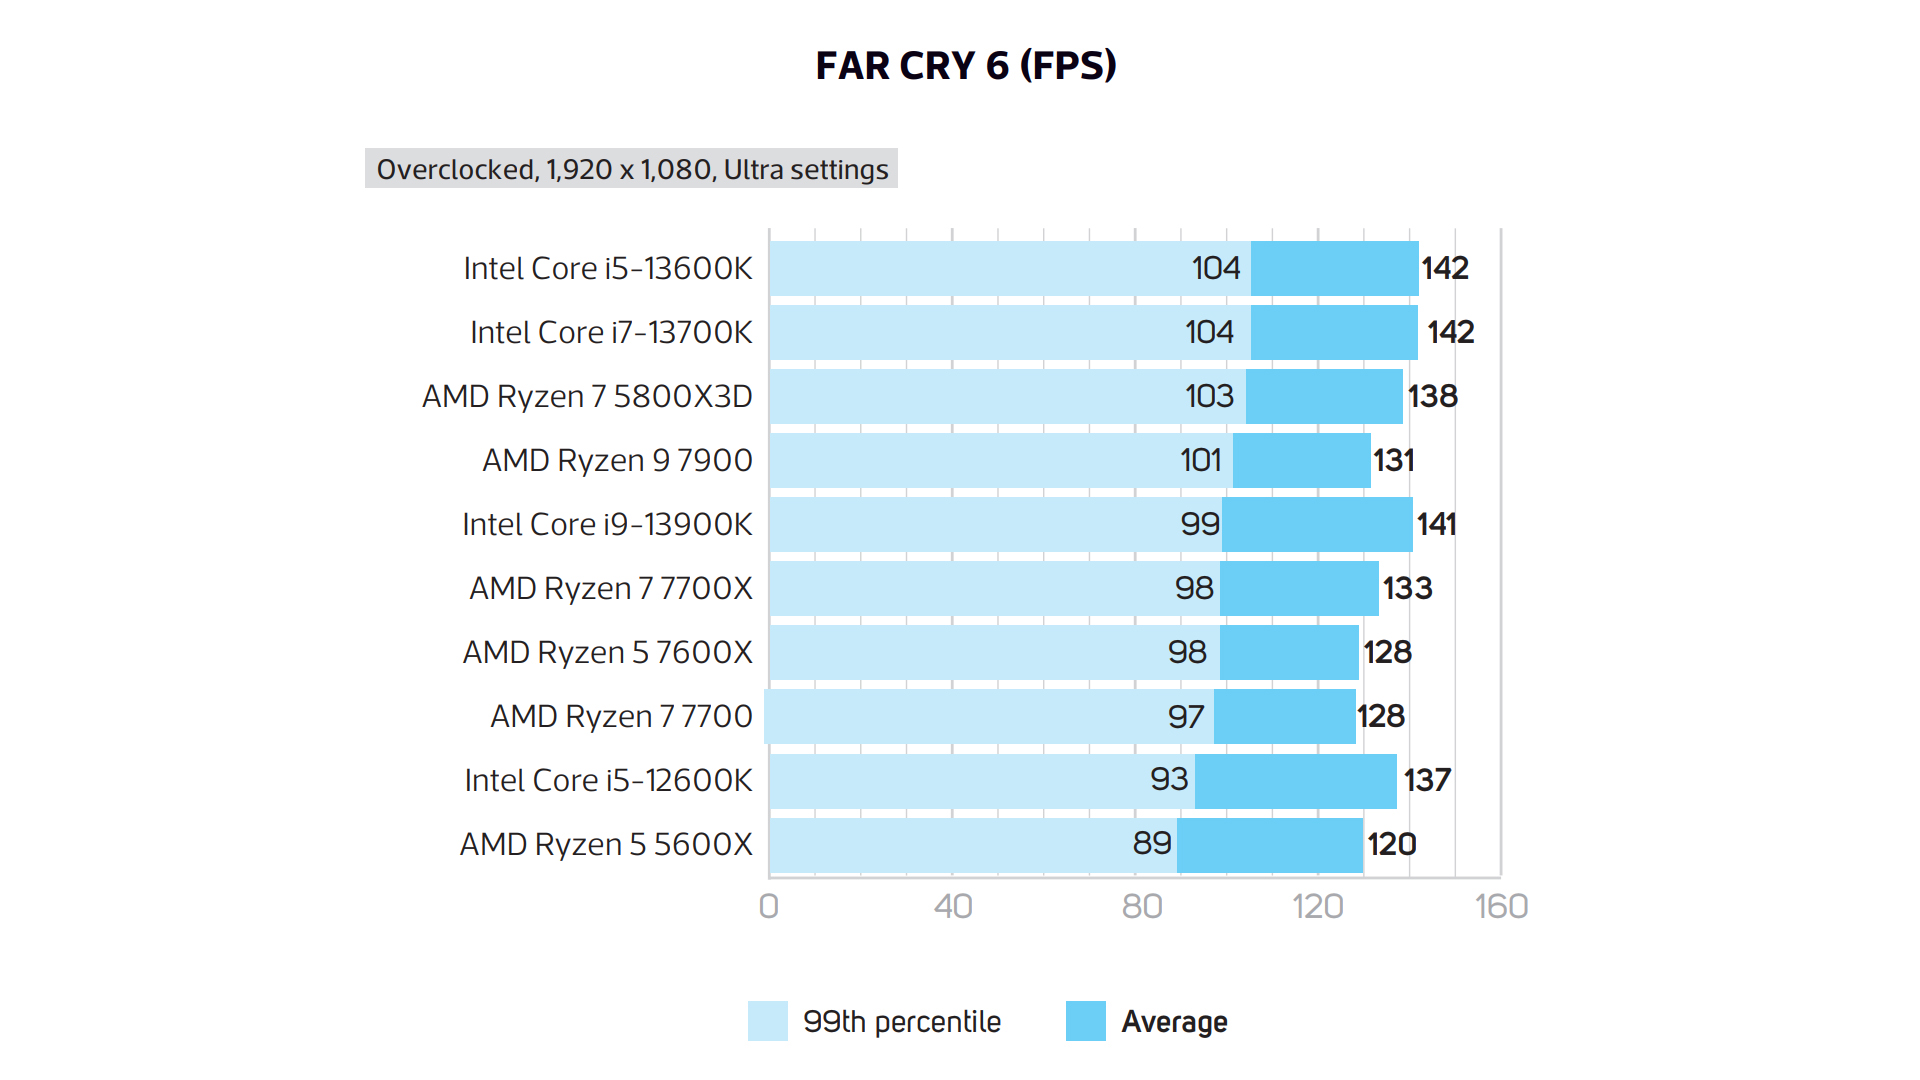 AMD Ryzen 7 7700 -8 Core 16 Thread Socket AM5 65W w/AMD Radeon